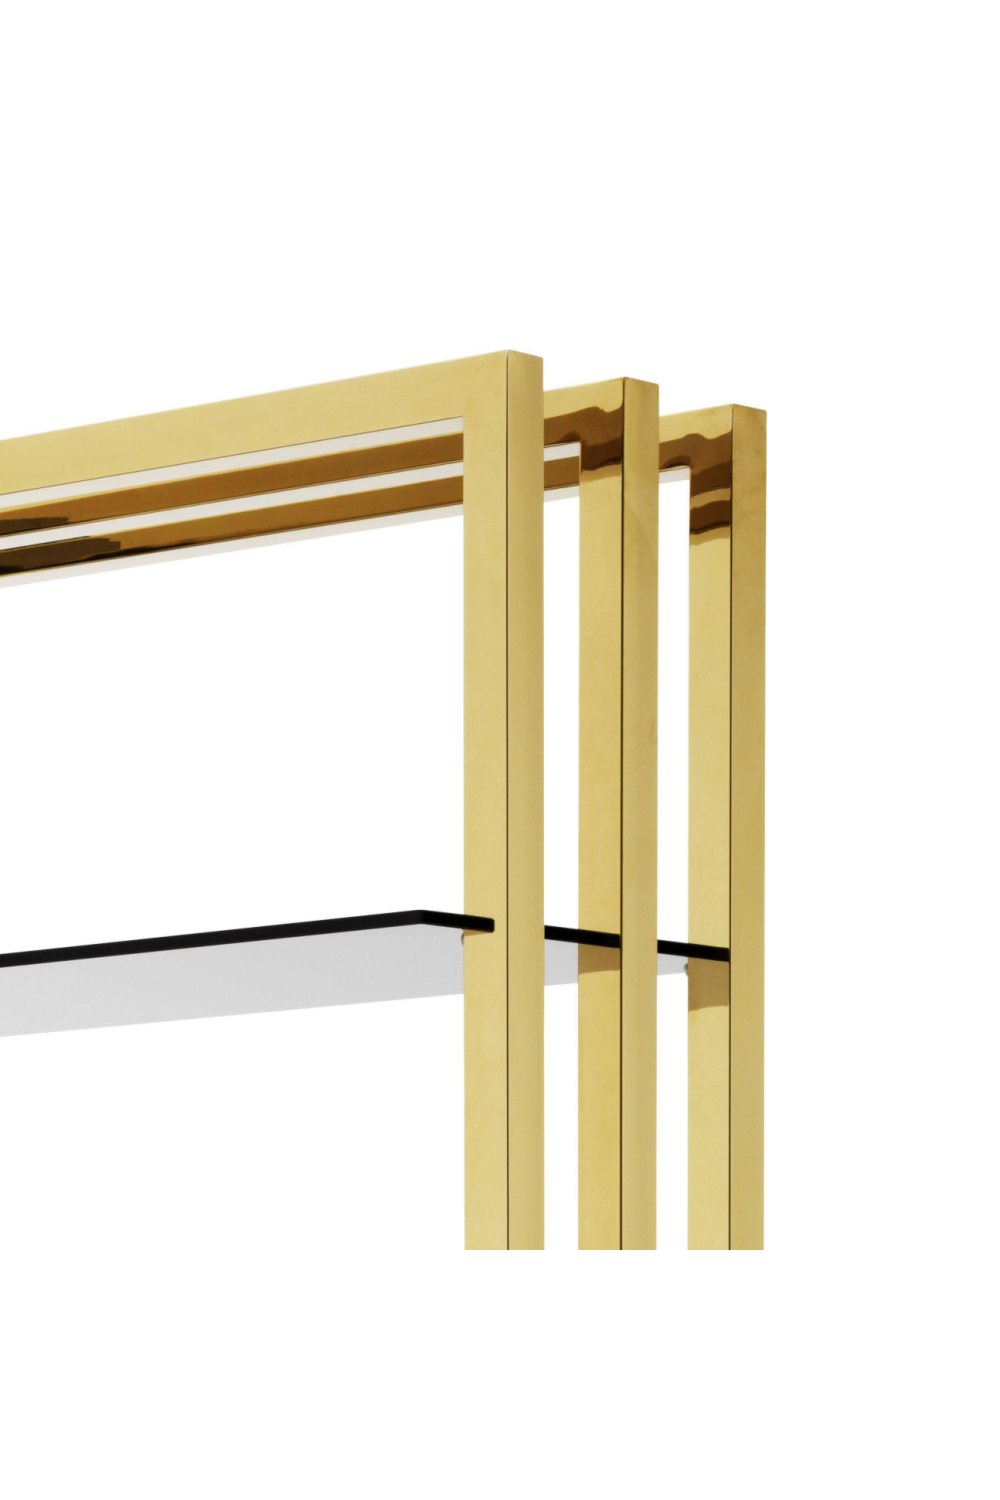 Gold & Steel Cabinet | Eichholtz Cipriani | #1 Eichholtz Online Retailer